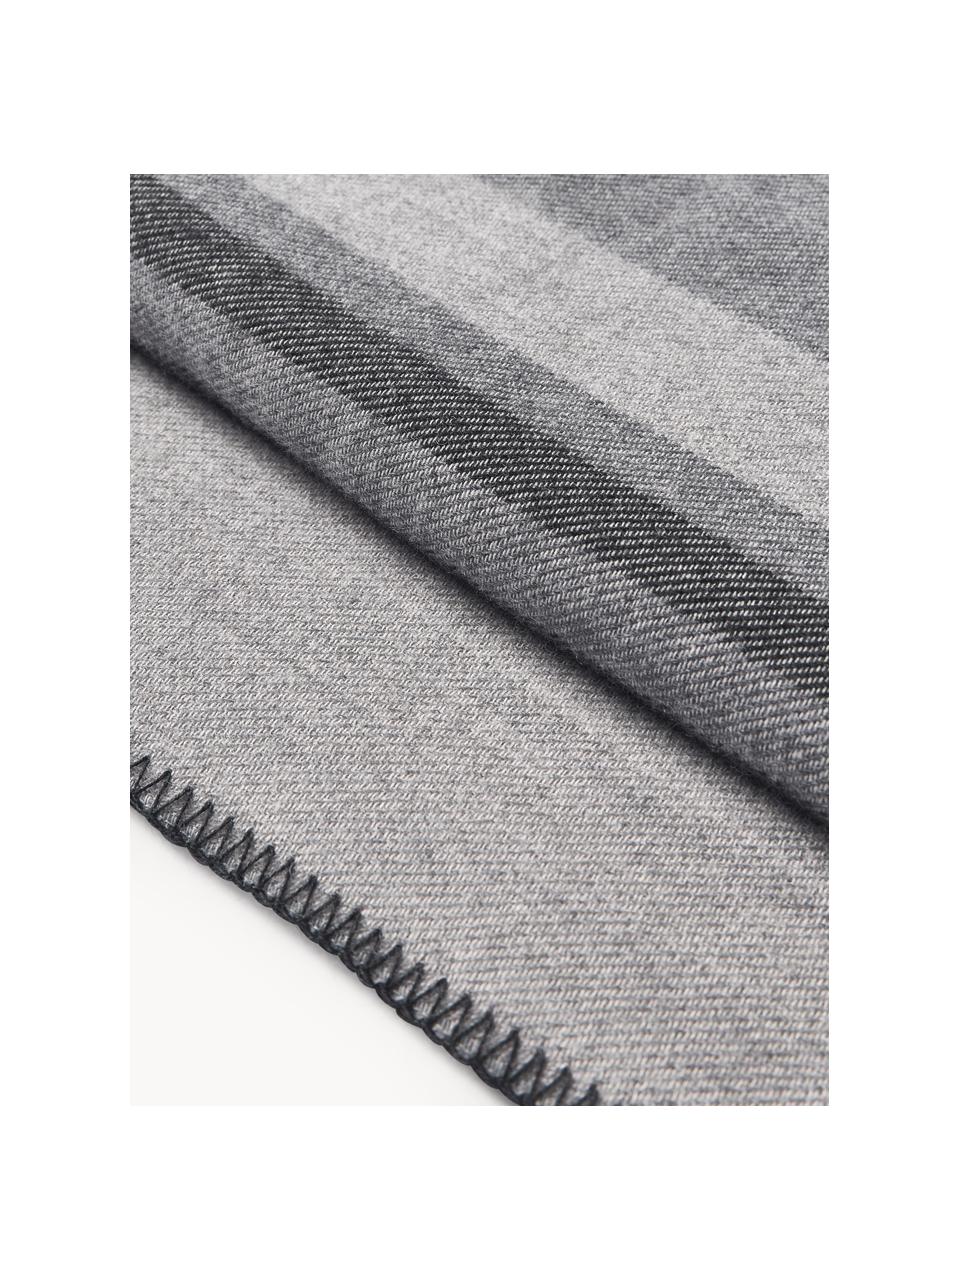 Copriletto in lana a righe Avorio, Tonalità grigie, Larg. 230 x Lung. 250 (per letti fino a 180 x 200 cm)